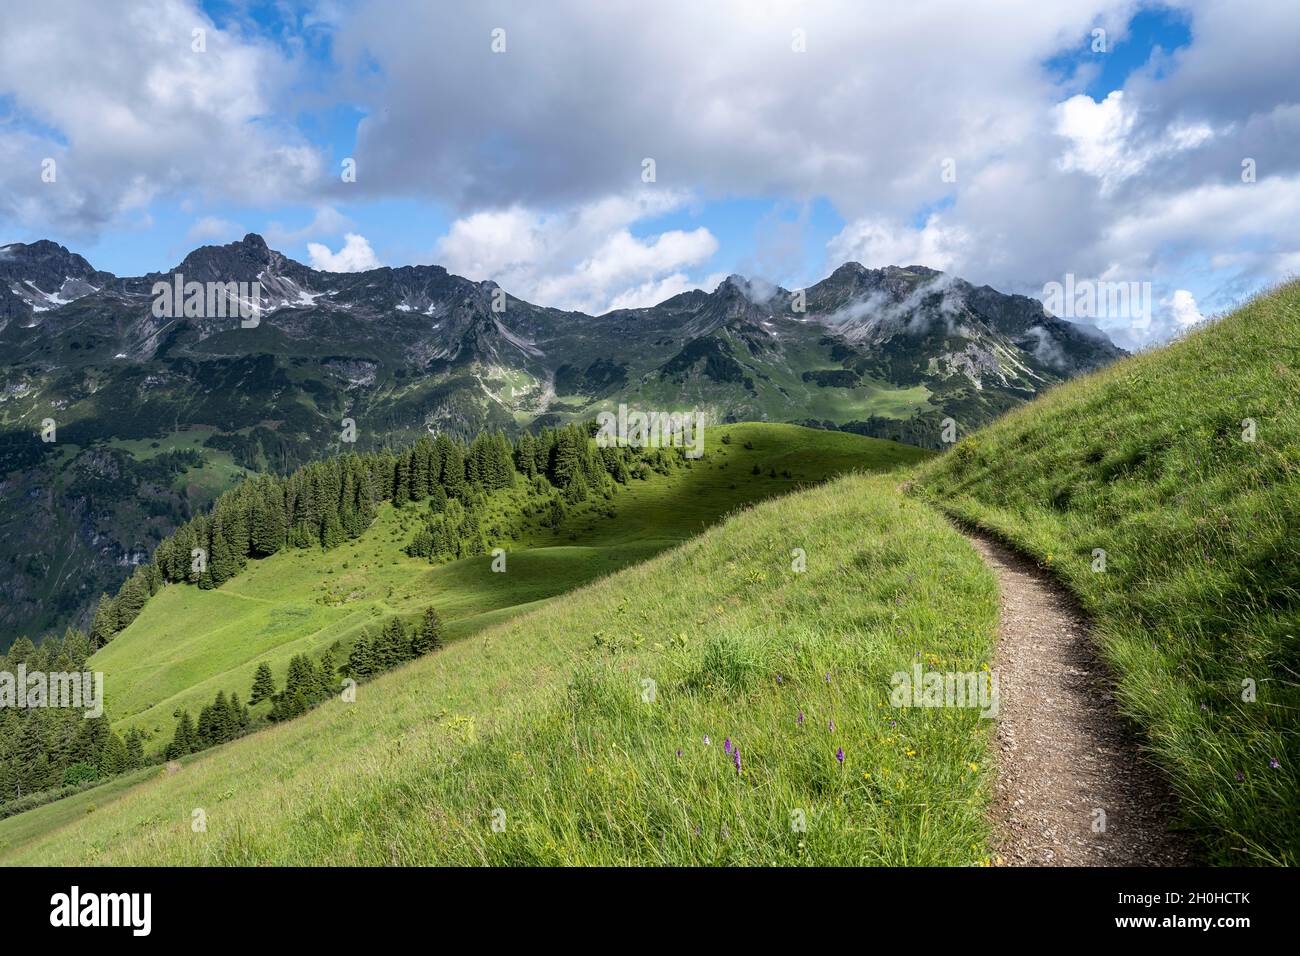 Einsamer Wanderweg, Berge dahinter, Heilbronner Weg, Allgäuer Alpen, Oberstdorf, Bayern, Deutschland Stockfoto